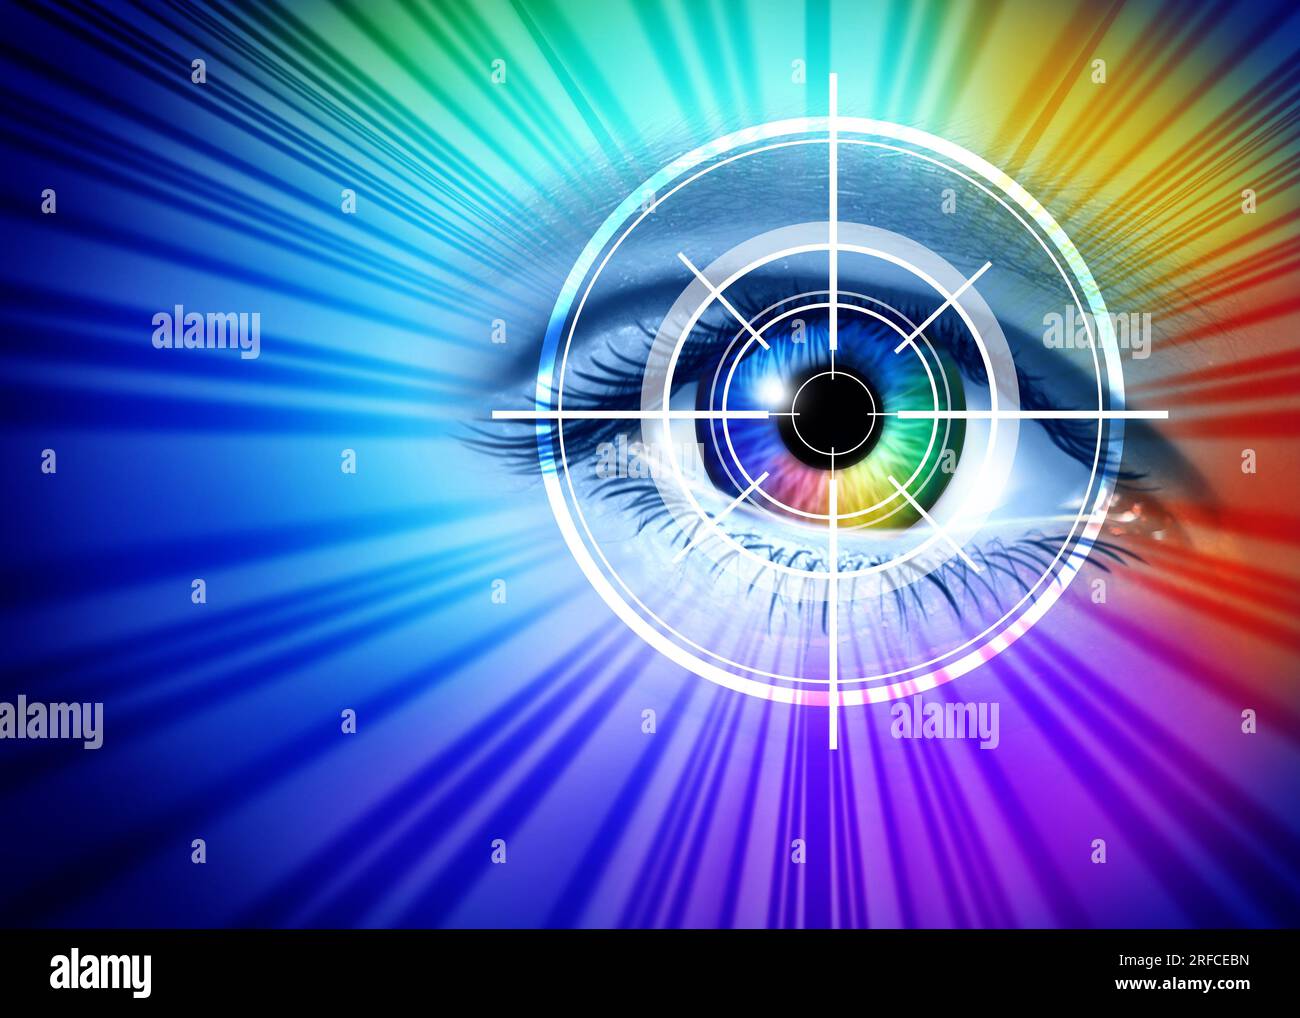 Scansione dell'iride e riconoscimento oculare o scansione retinica come identificazione biometrica per la sicurezza dell'identità identificando i modelli negli occhi umani come authentica Foto Stock